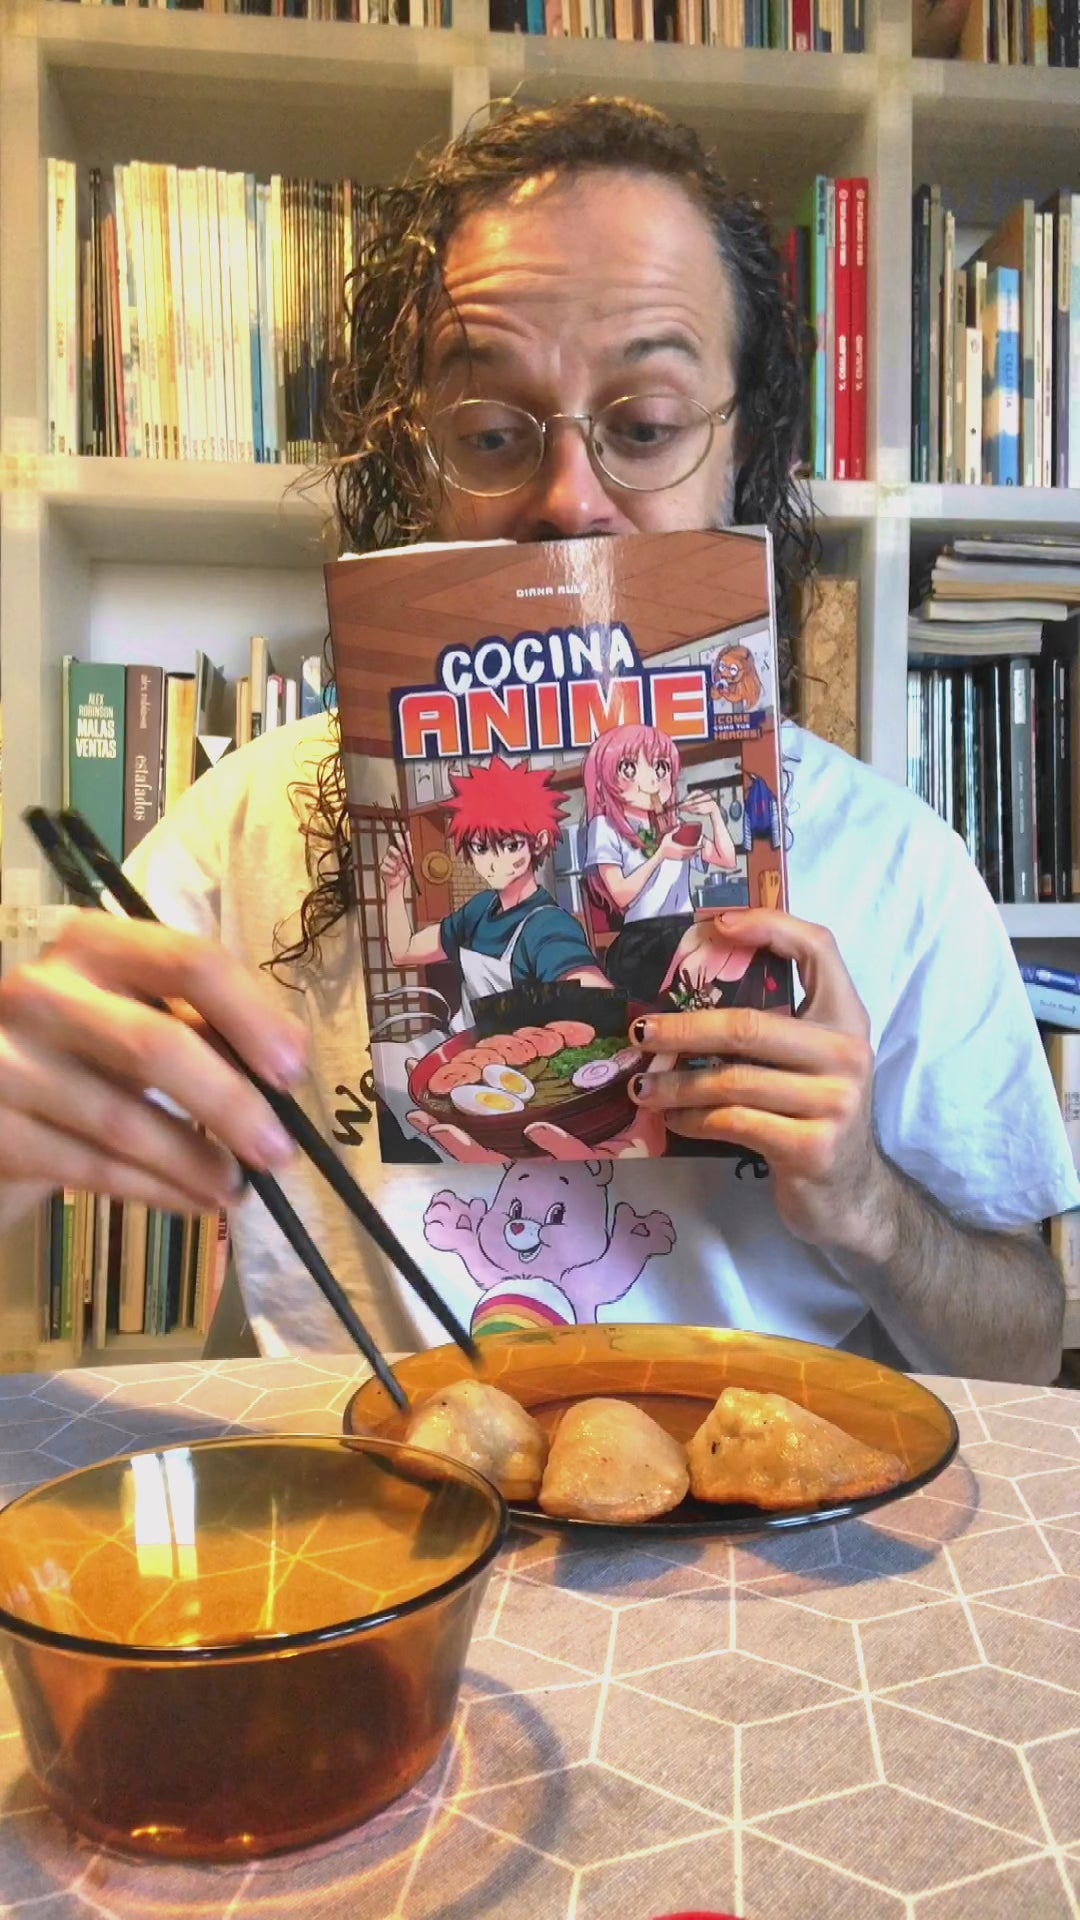 Persona cocinando usando el libro de recetas Cocina Anime para hacer gyozas